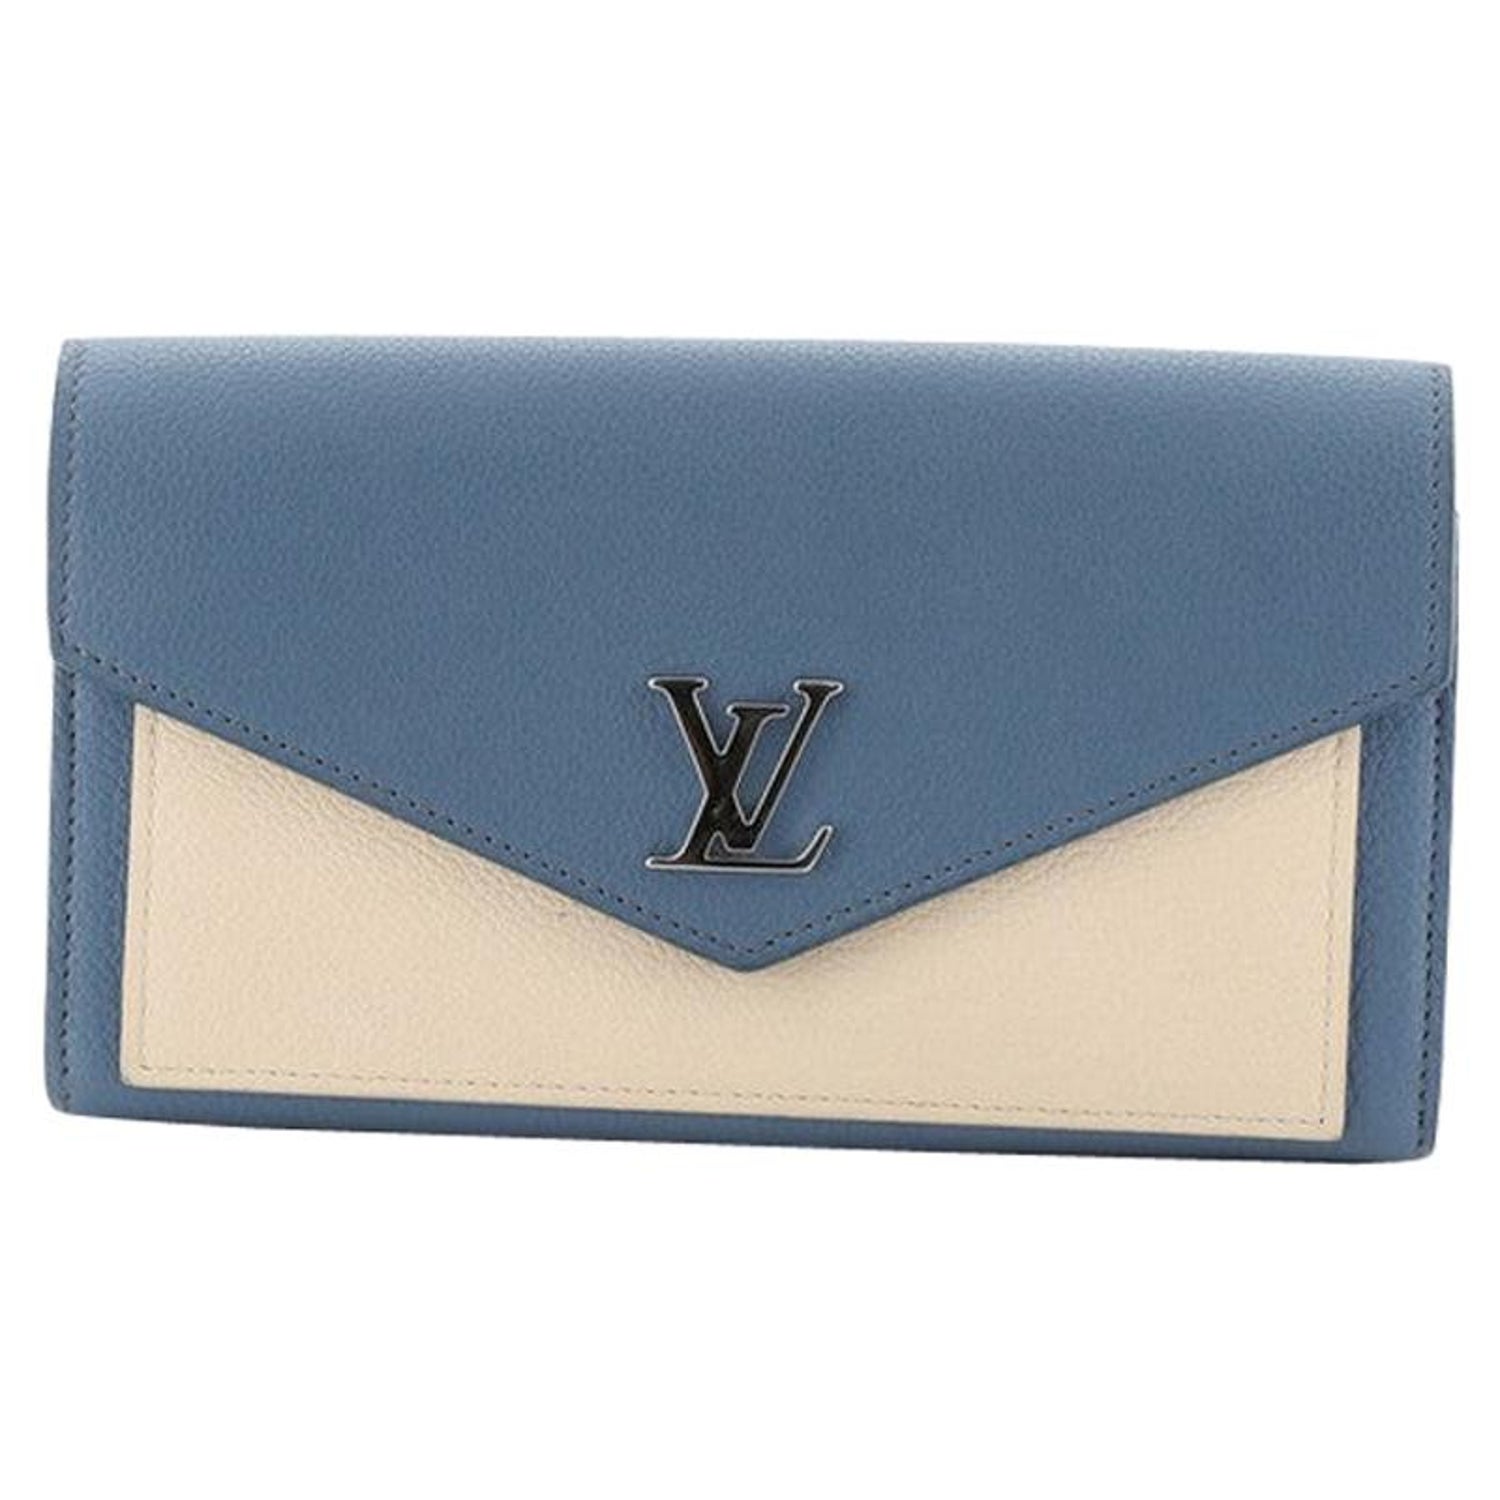 Shop Louis Vuitton Mylockme compact wallet by felie